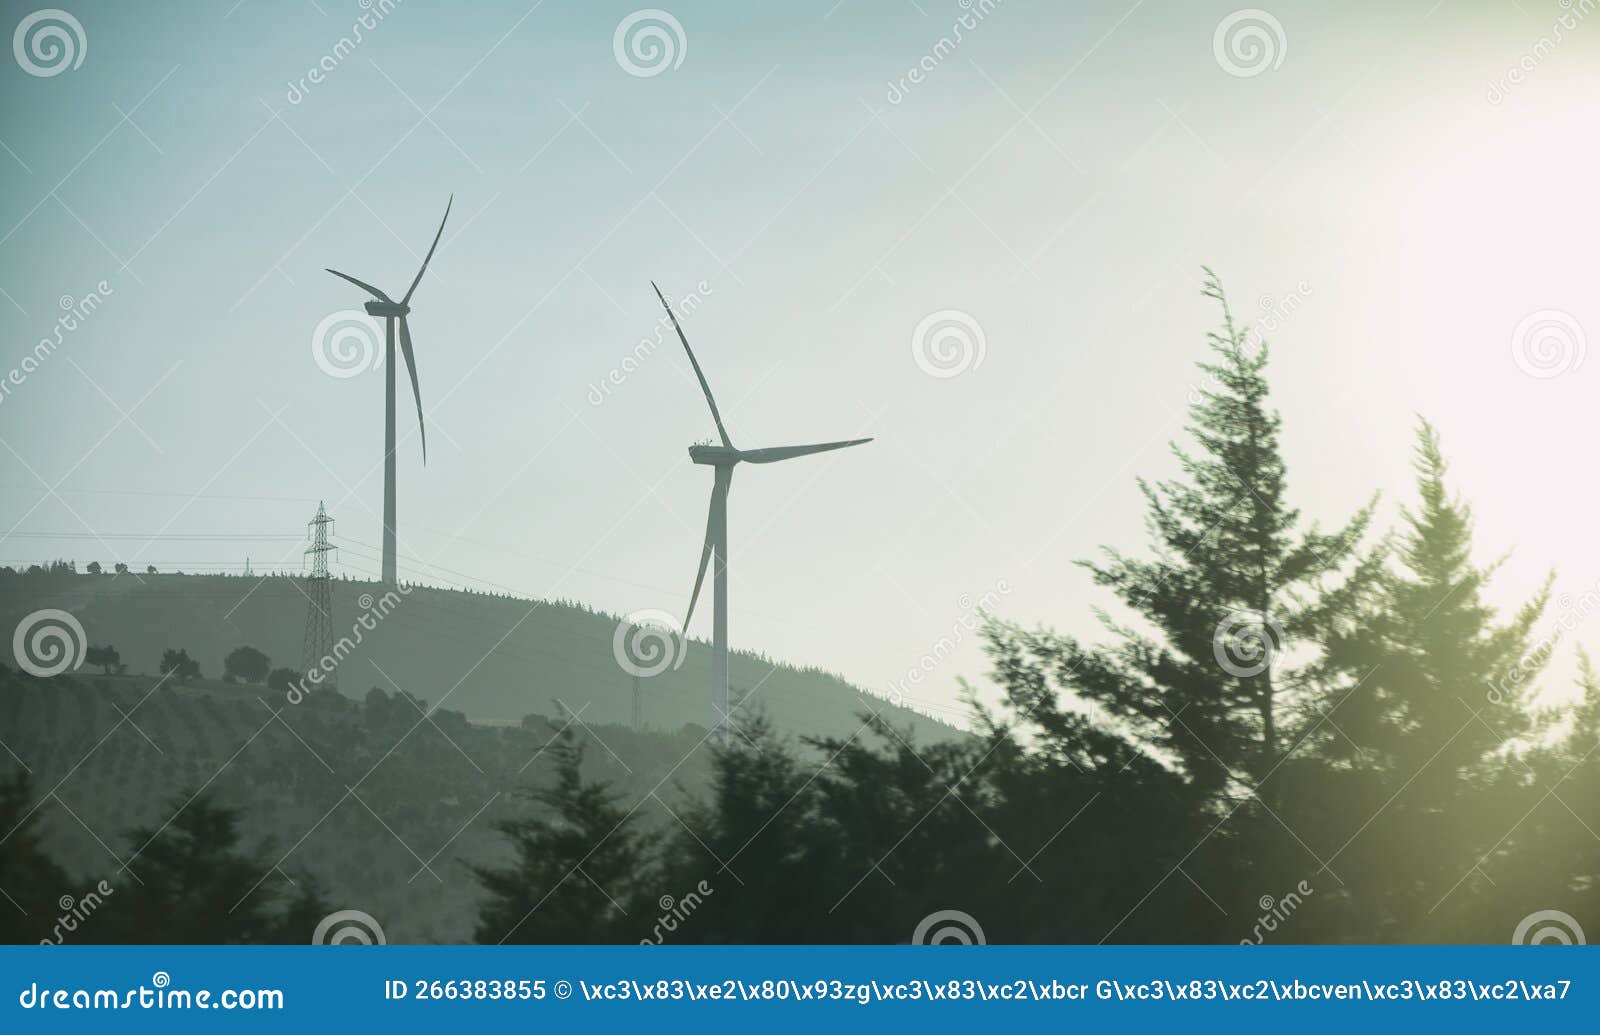 wind turbines and pine trees, hatay, turkey